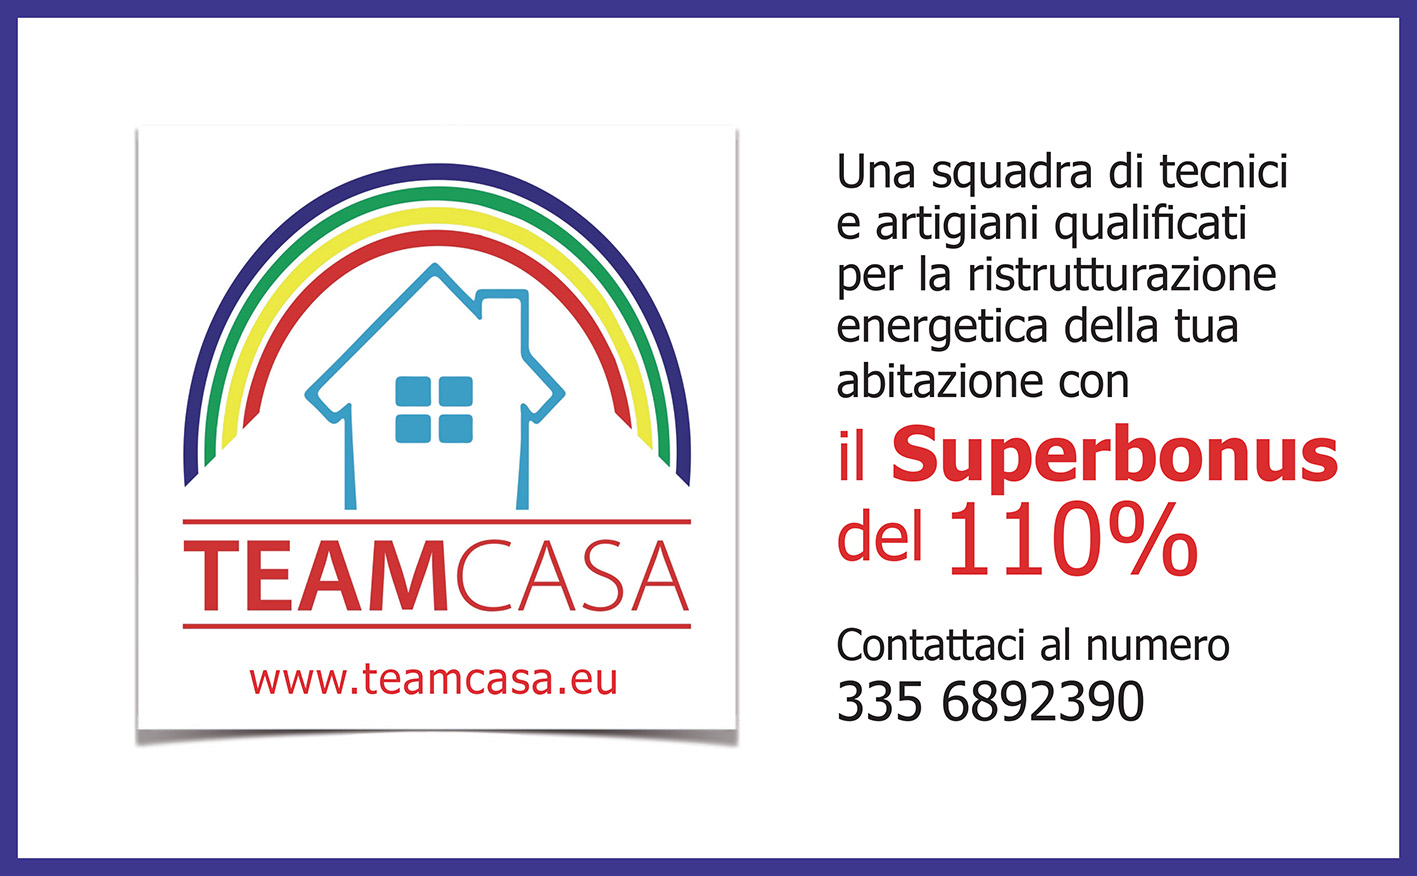 Teamcasa Superbonus 110%